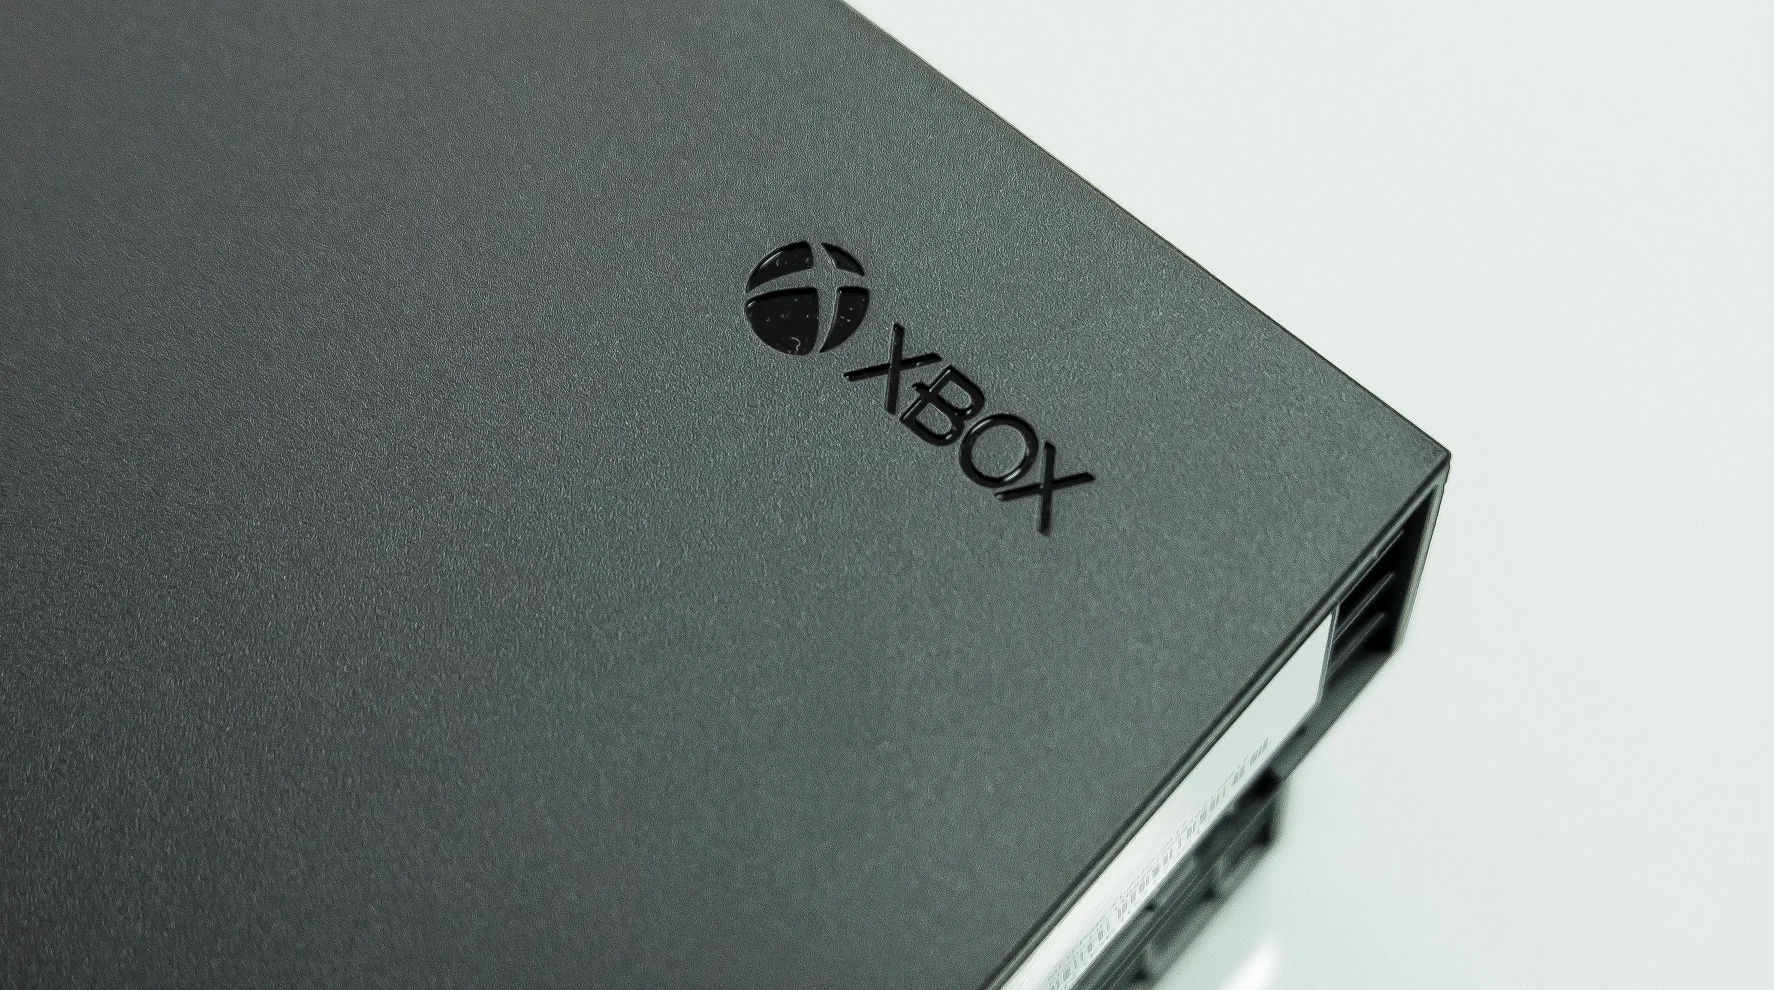 Обзор Xbox One X: Microsoft сделала очень крутую консоль. Надо брать? [+Видео] - фото 1